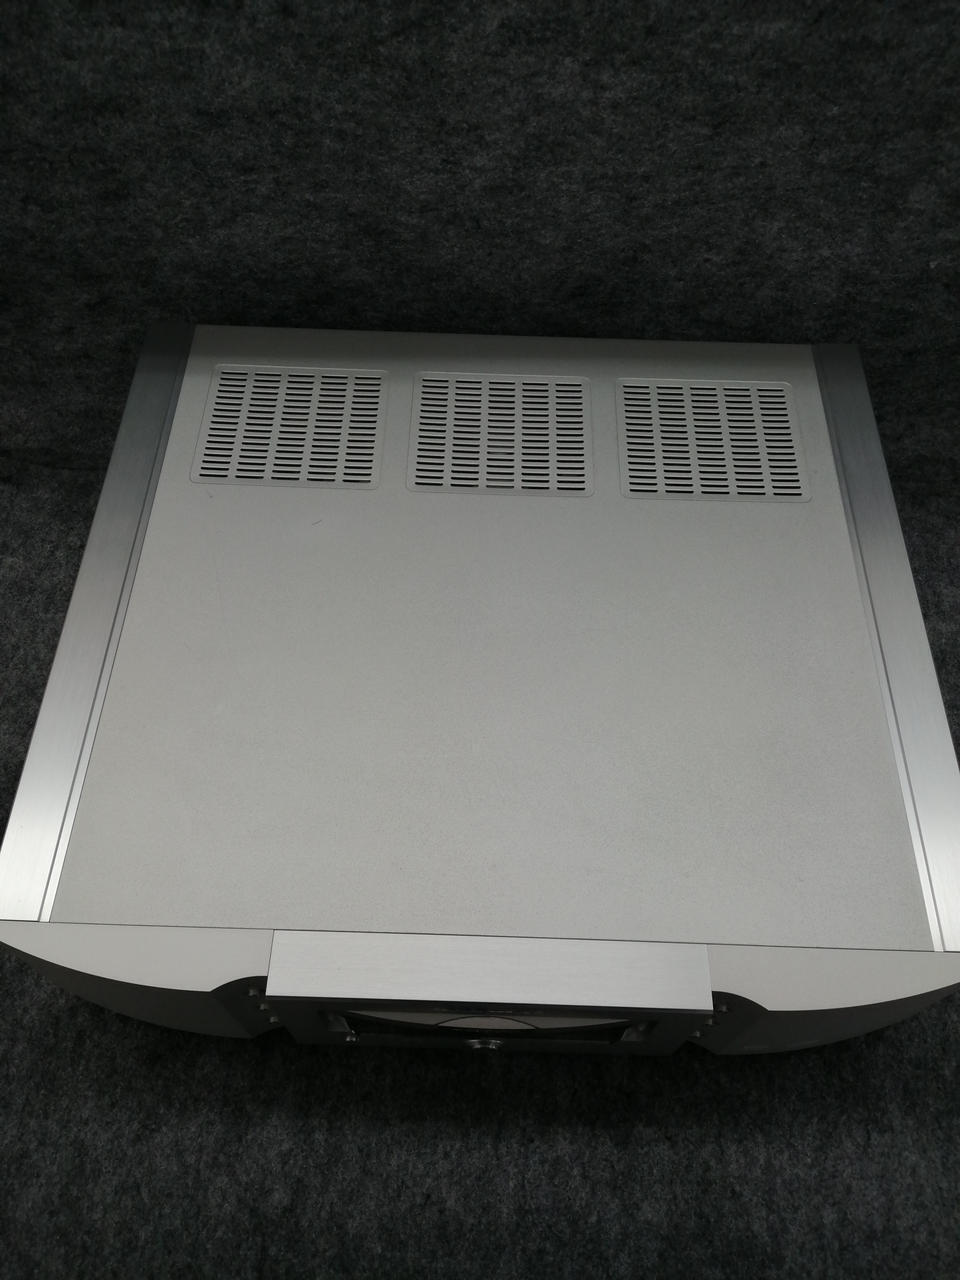 SA-11S1 SACD/CD marantz Player Japan Used